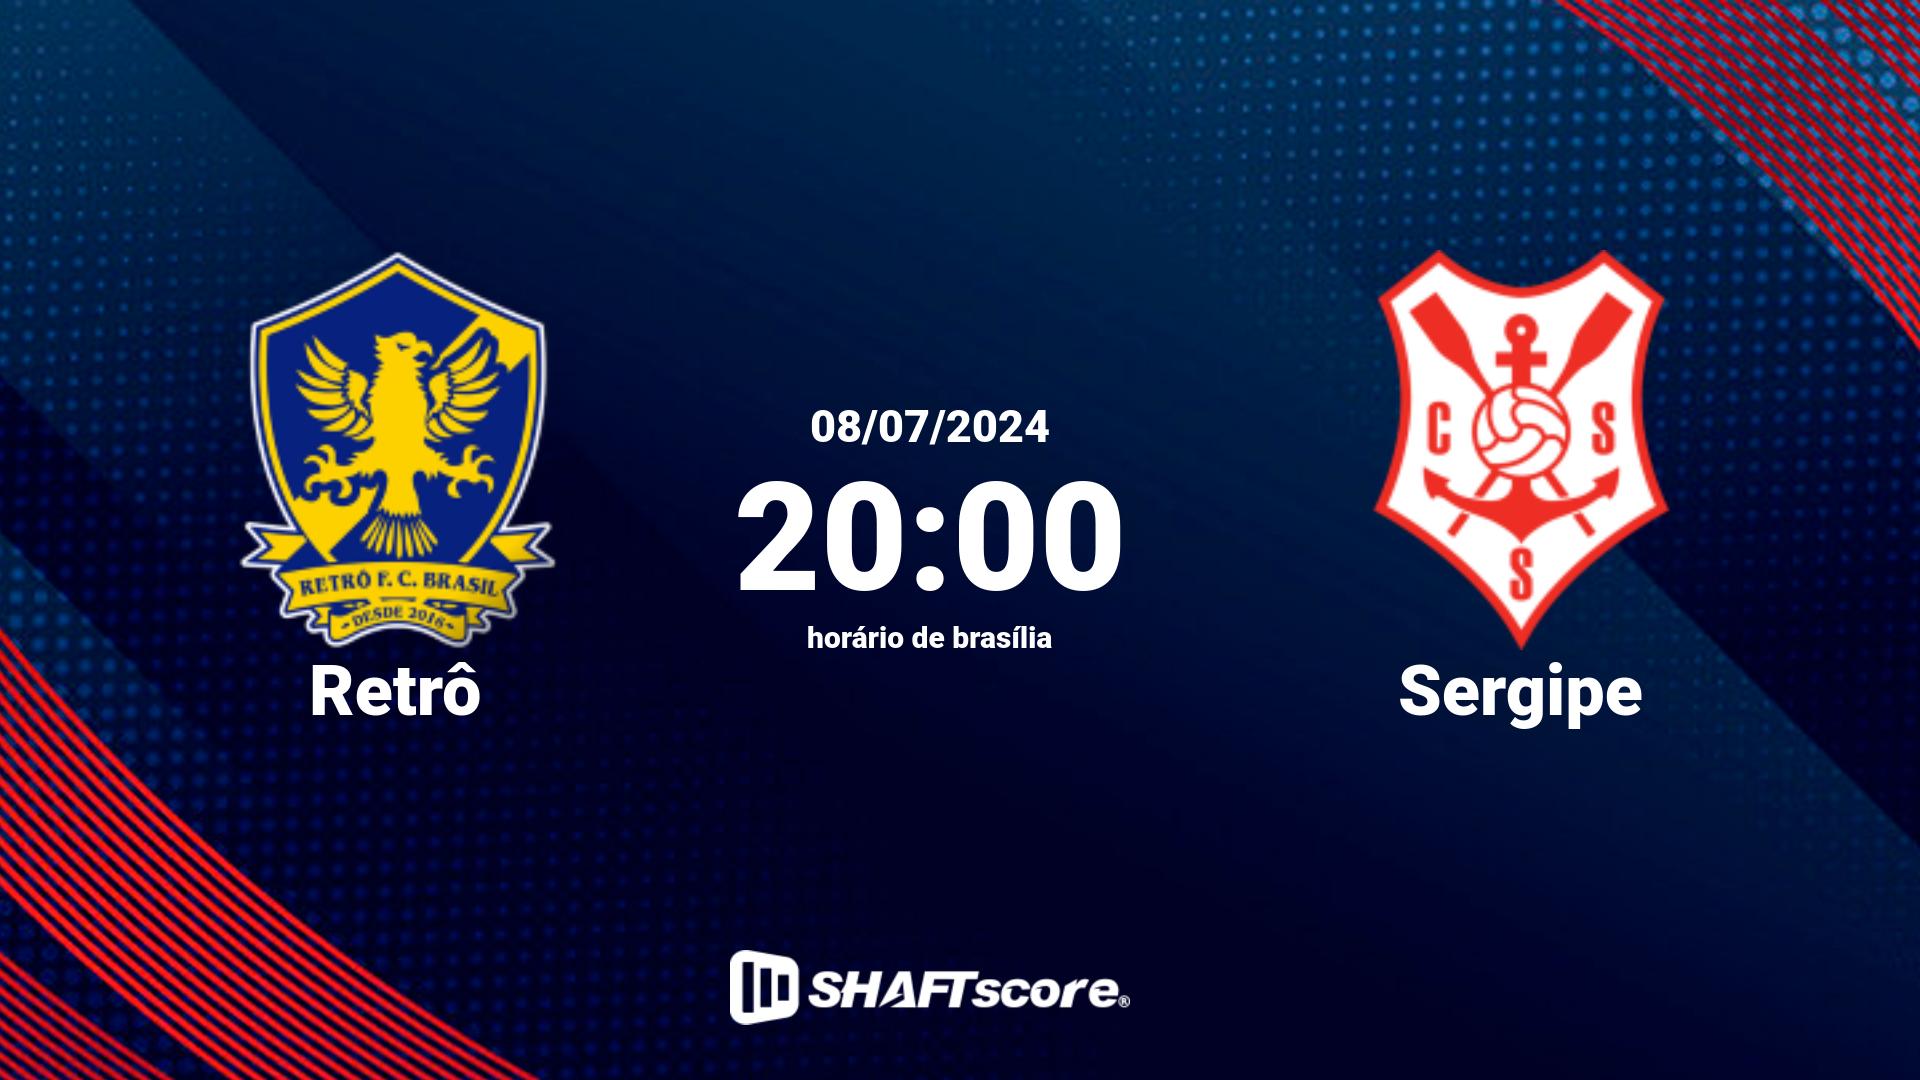 Estatísticas do jogo Retrô vs Sergipe 08.07 20:00